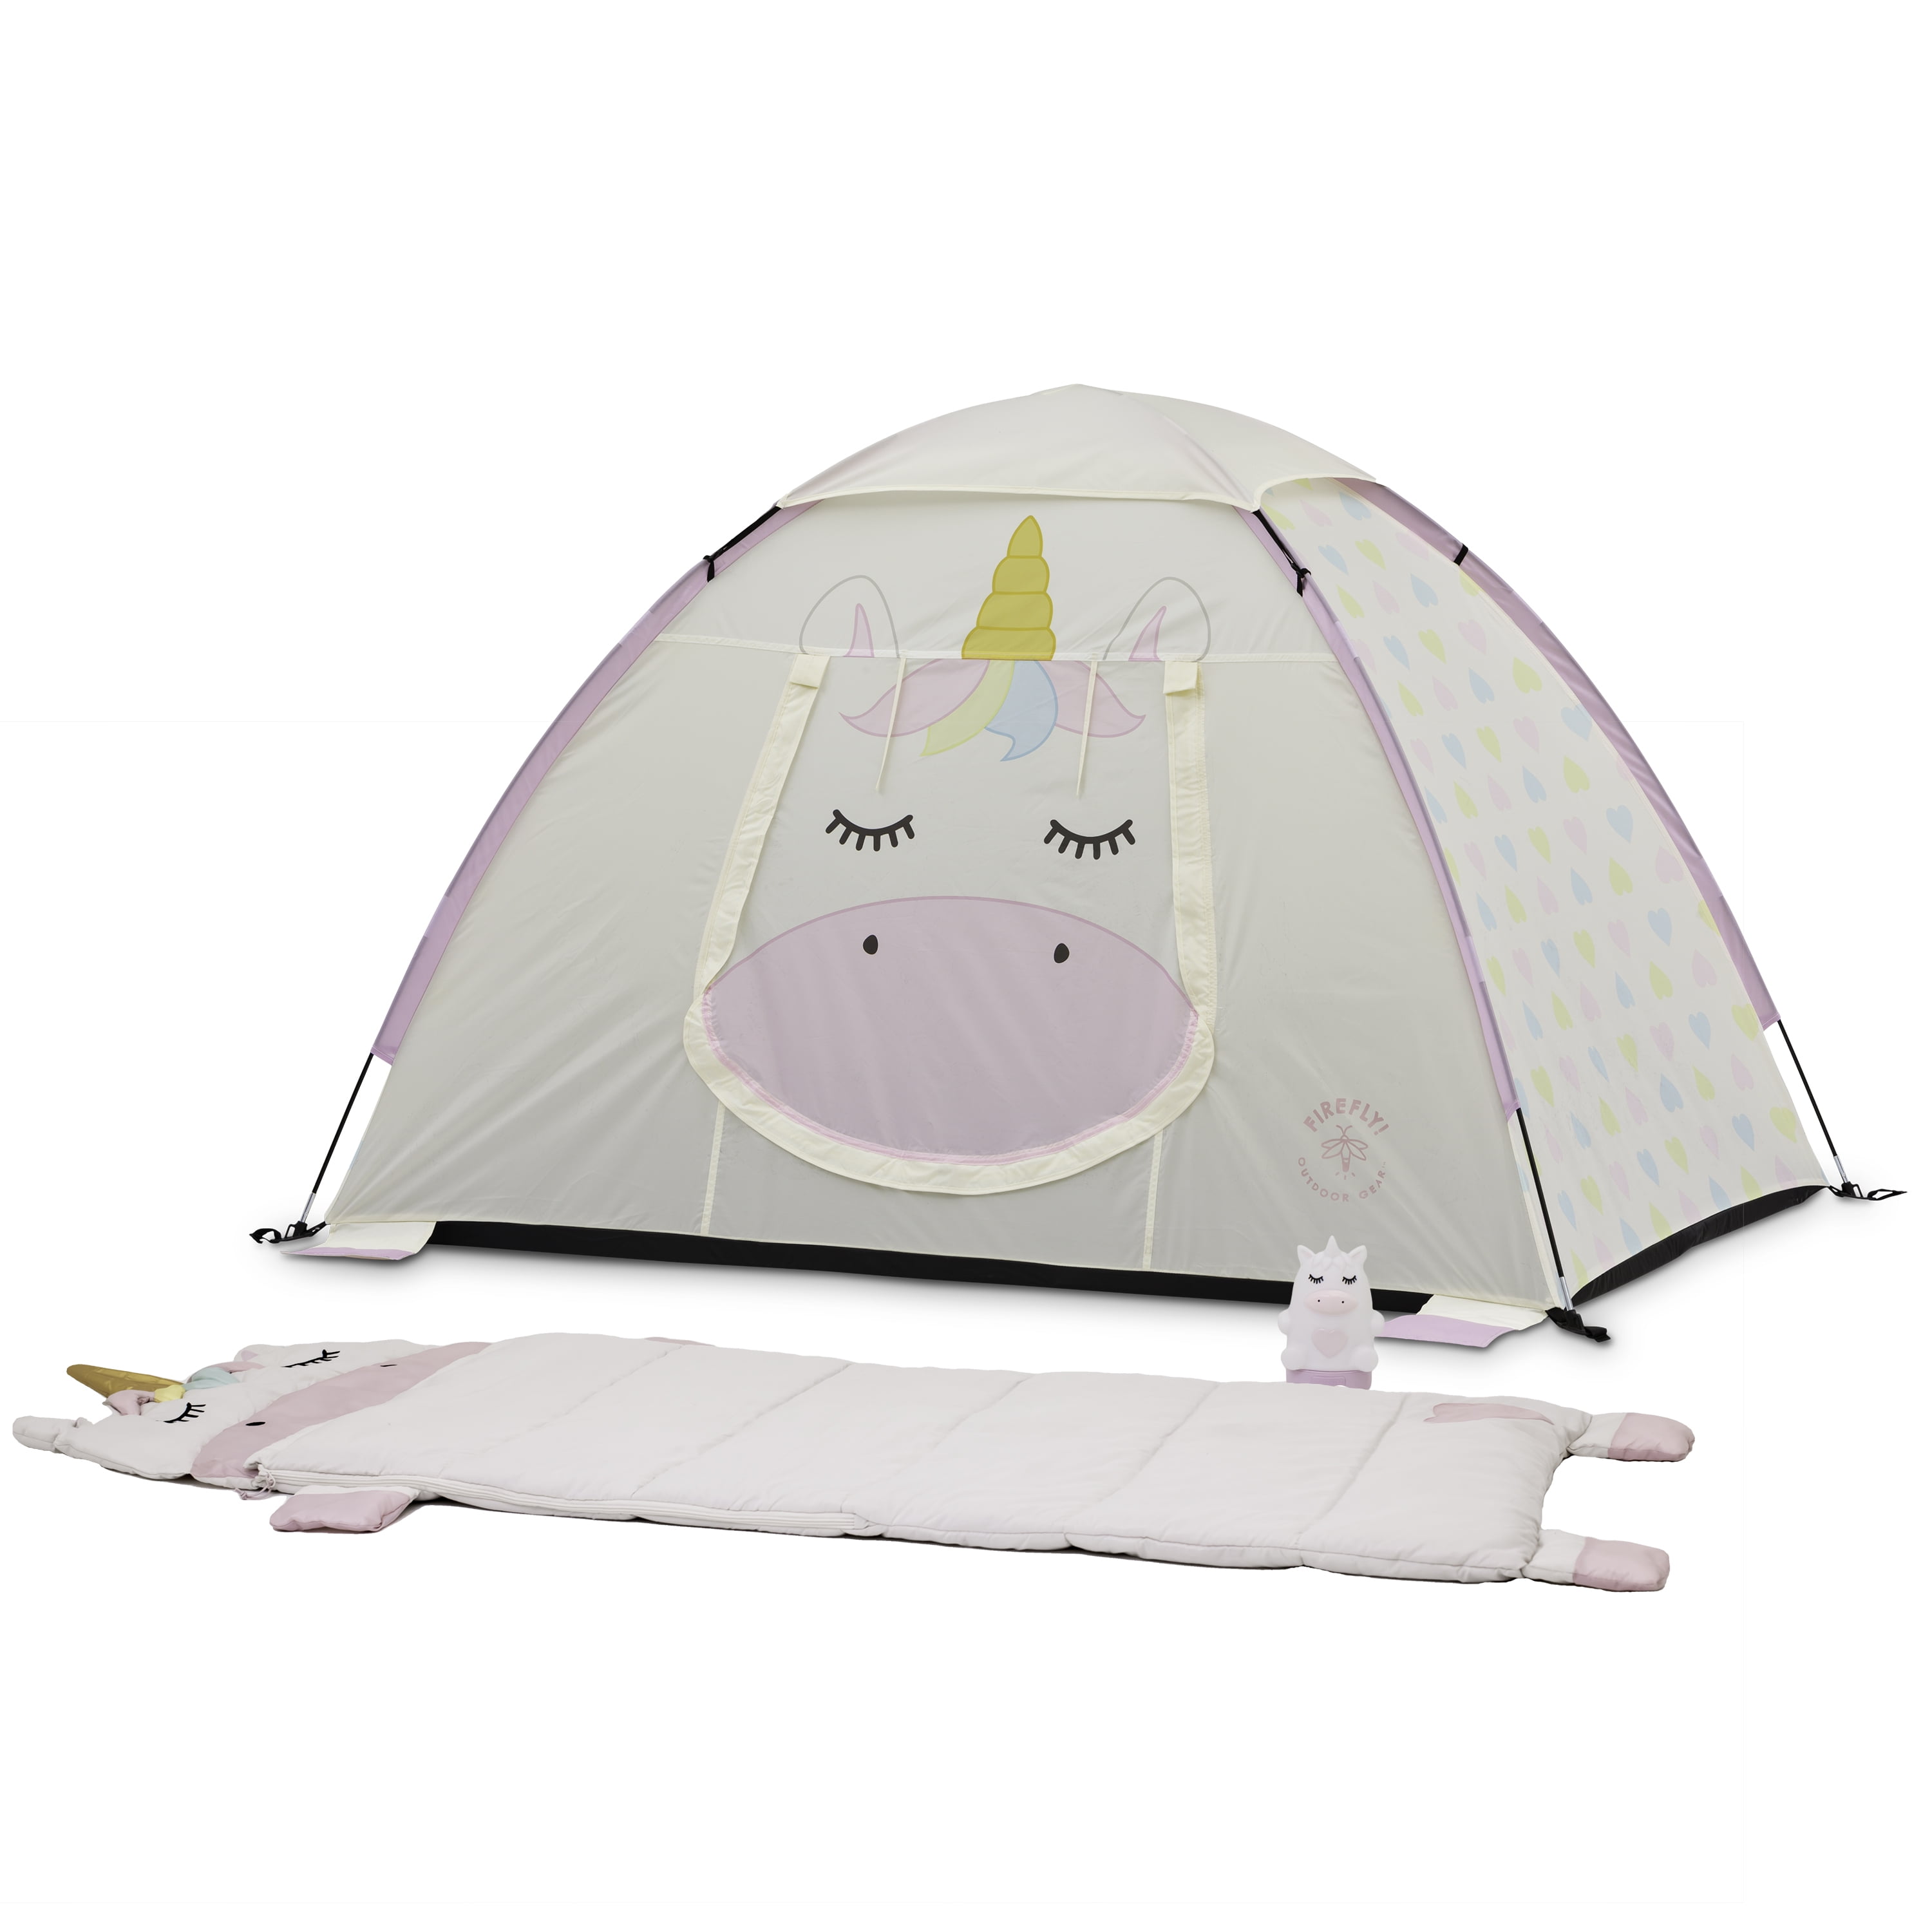 Hangen Voorstel iets Firefly! Outdoor Gear Sparkle the Unicorn Kid's Camping Combo (One-room Tent,  Sleeping Bag, Lantern) - Walmart.com